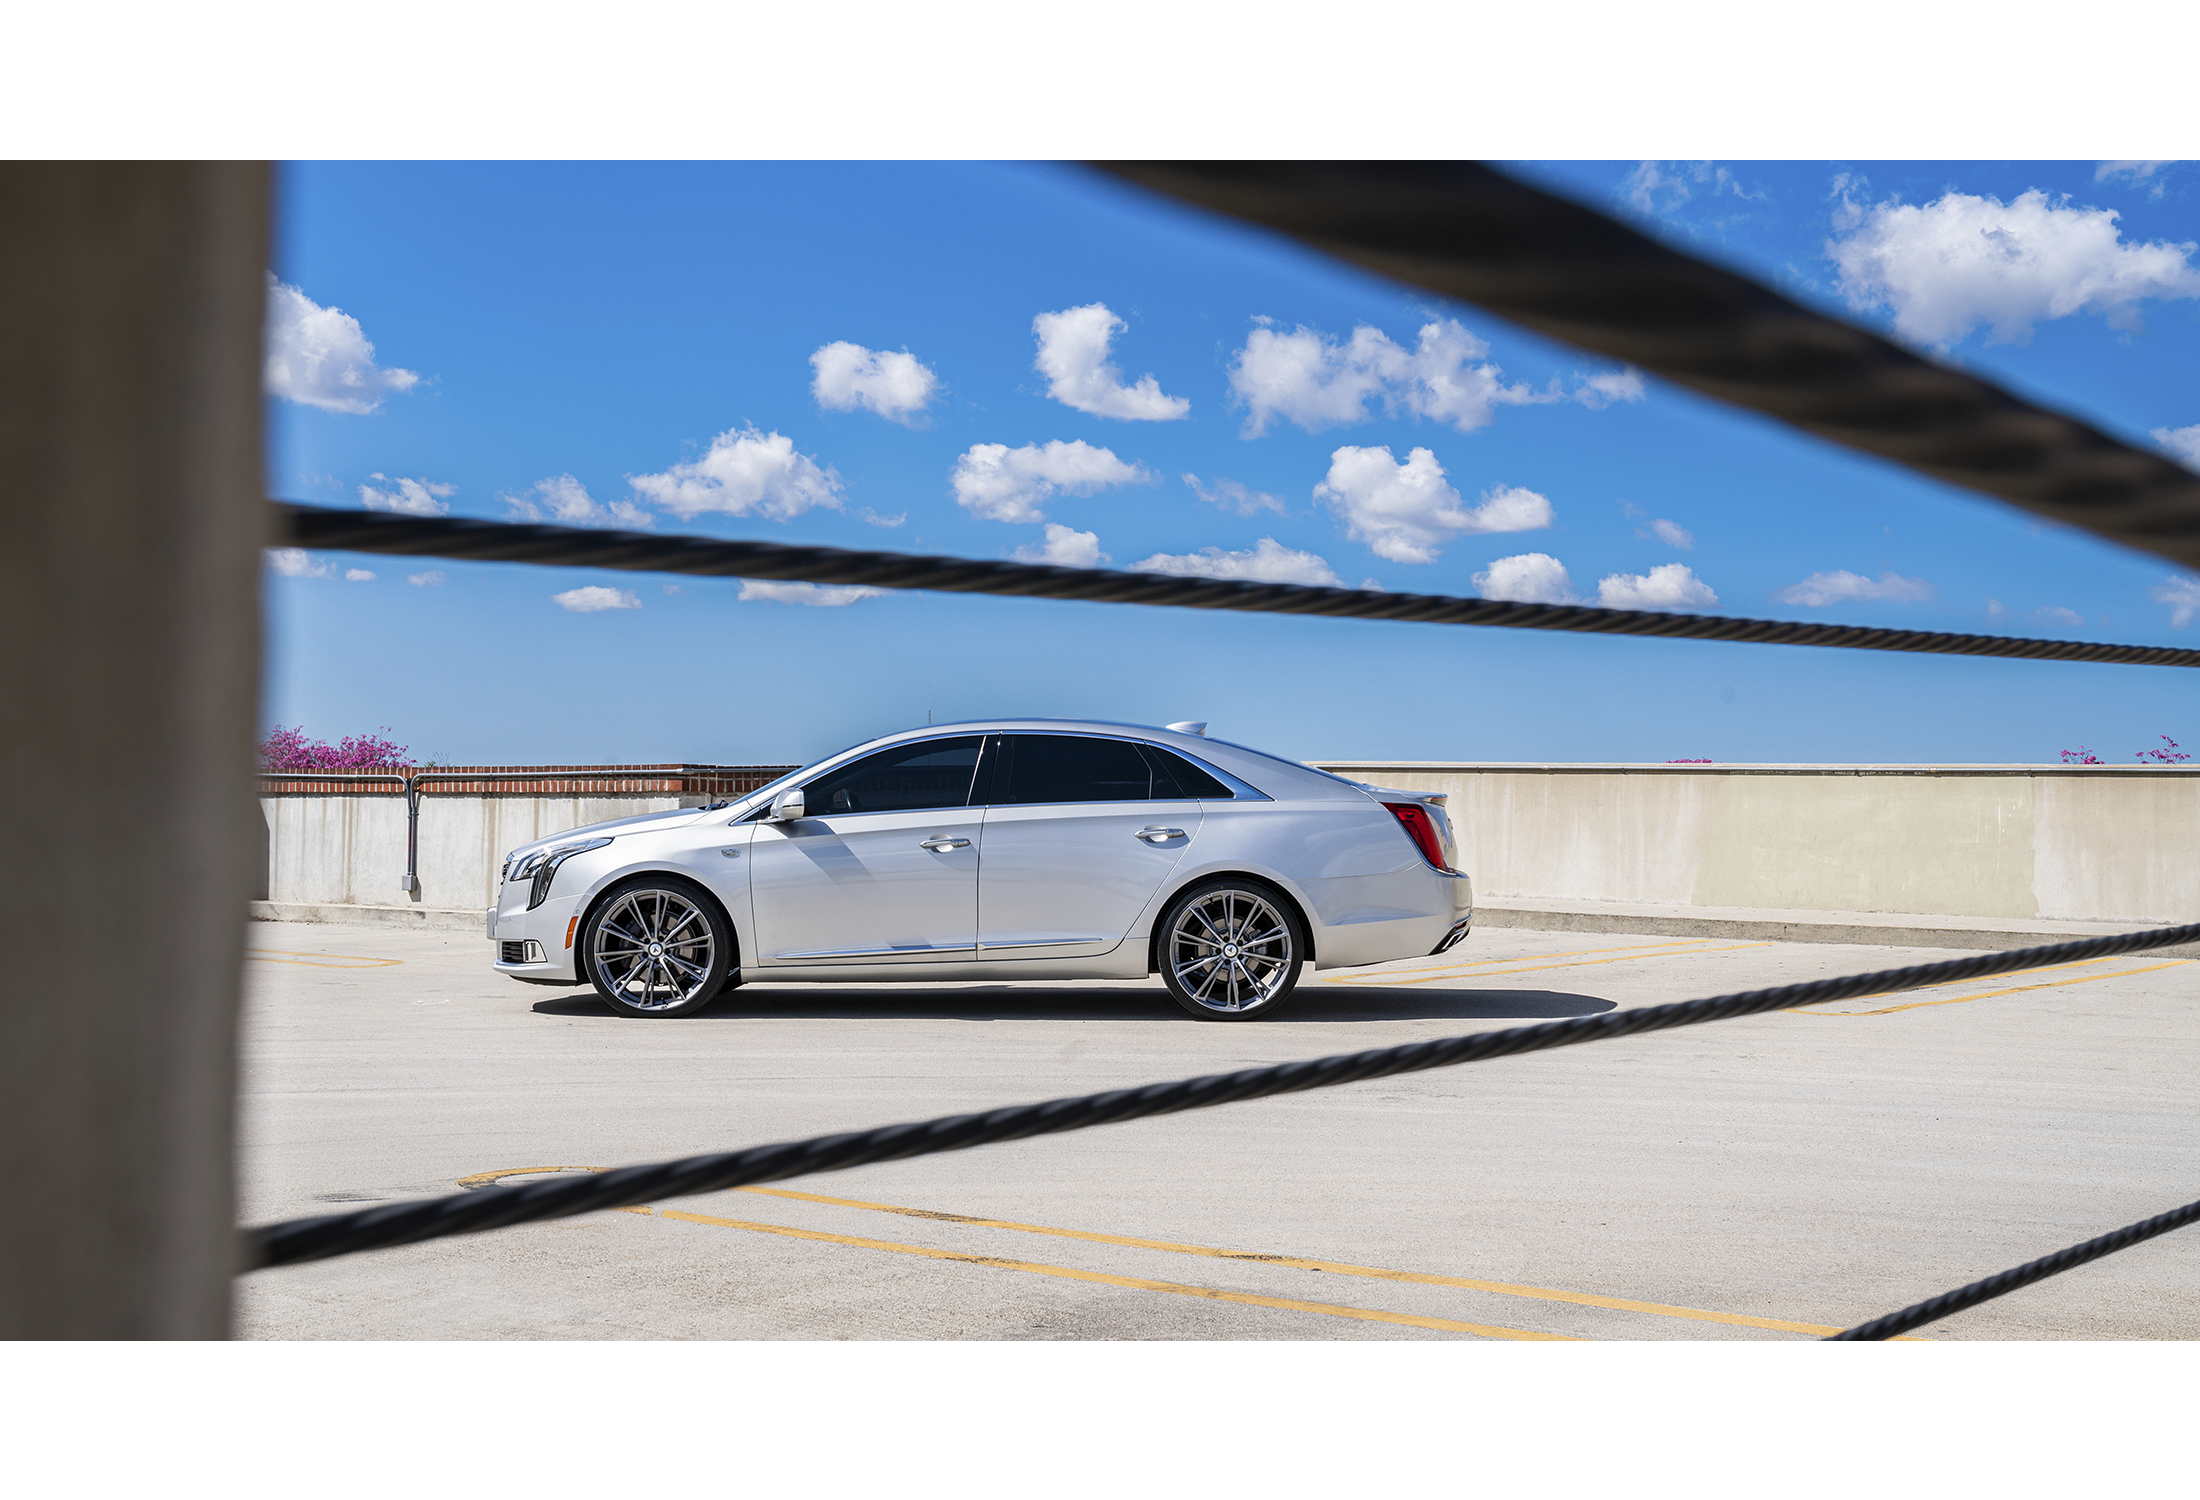 2019 Cadillac XTS